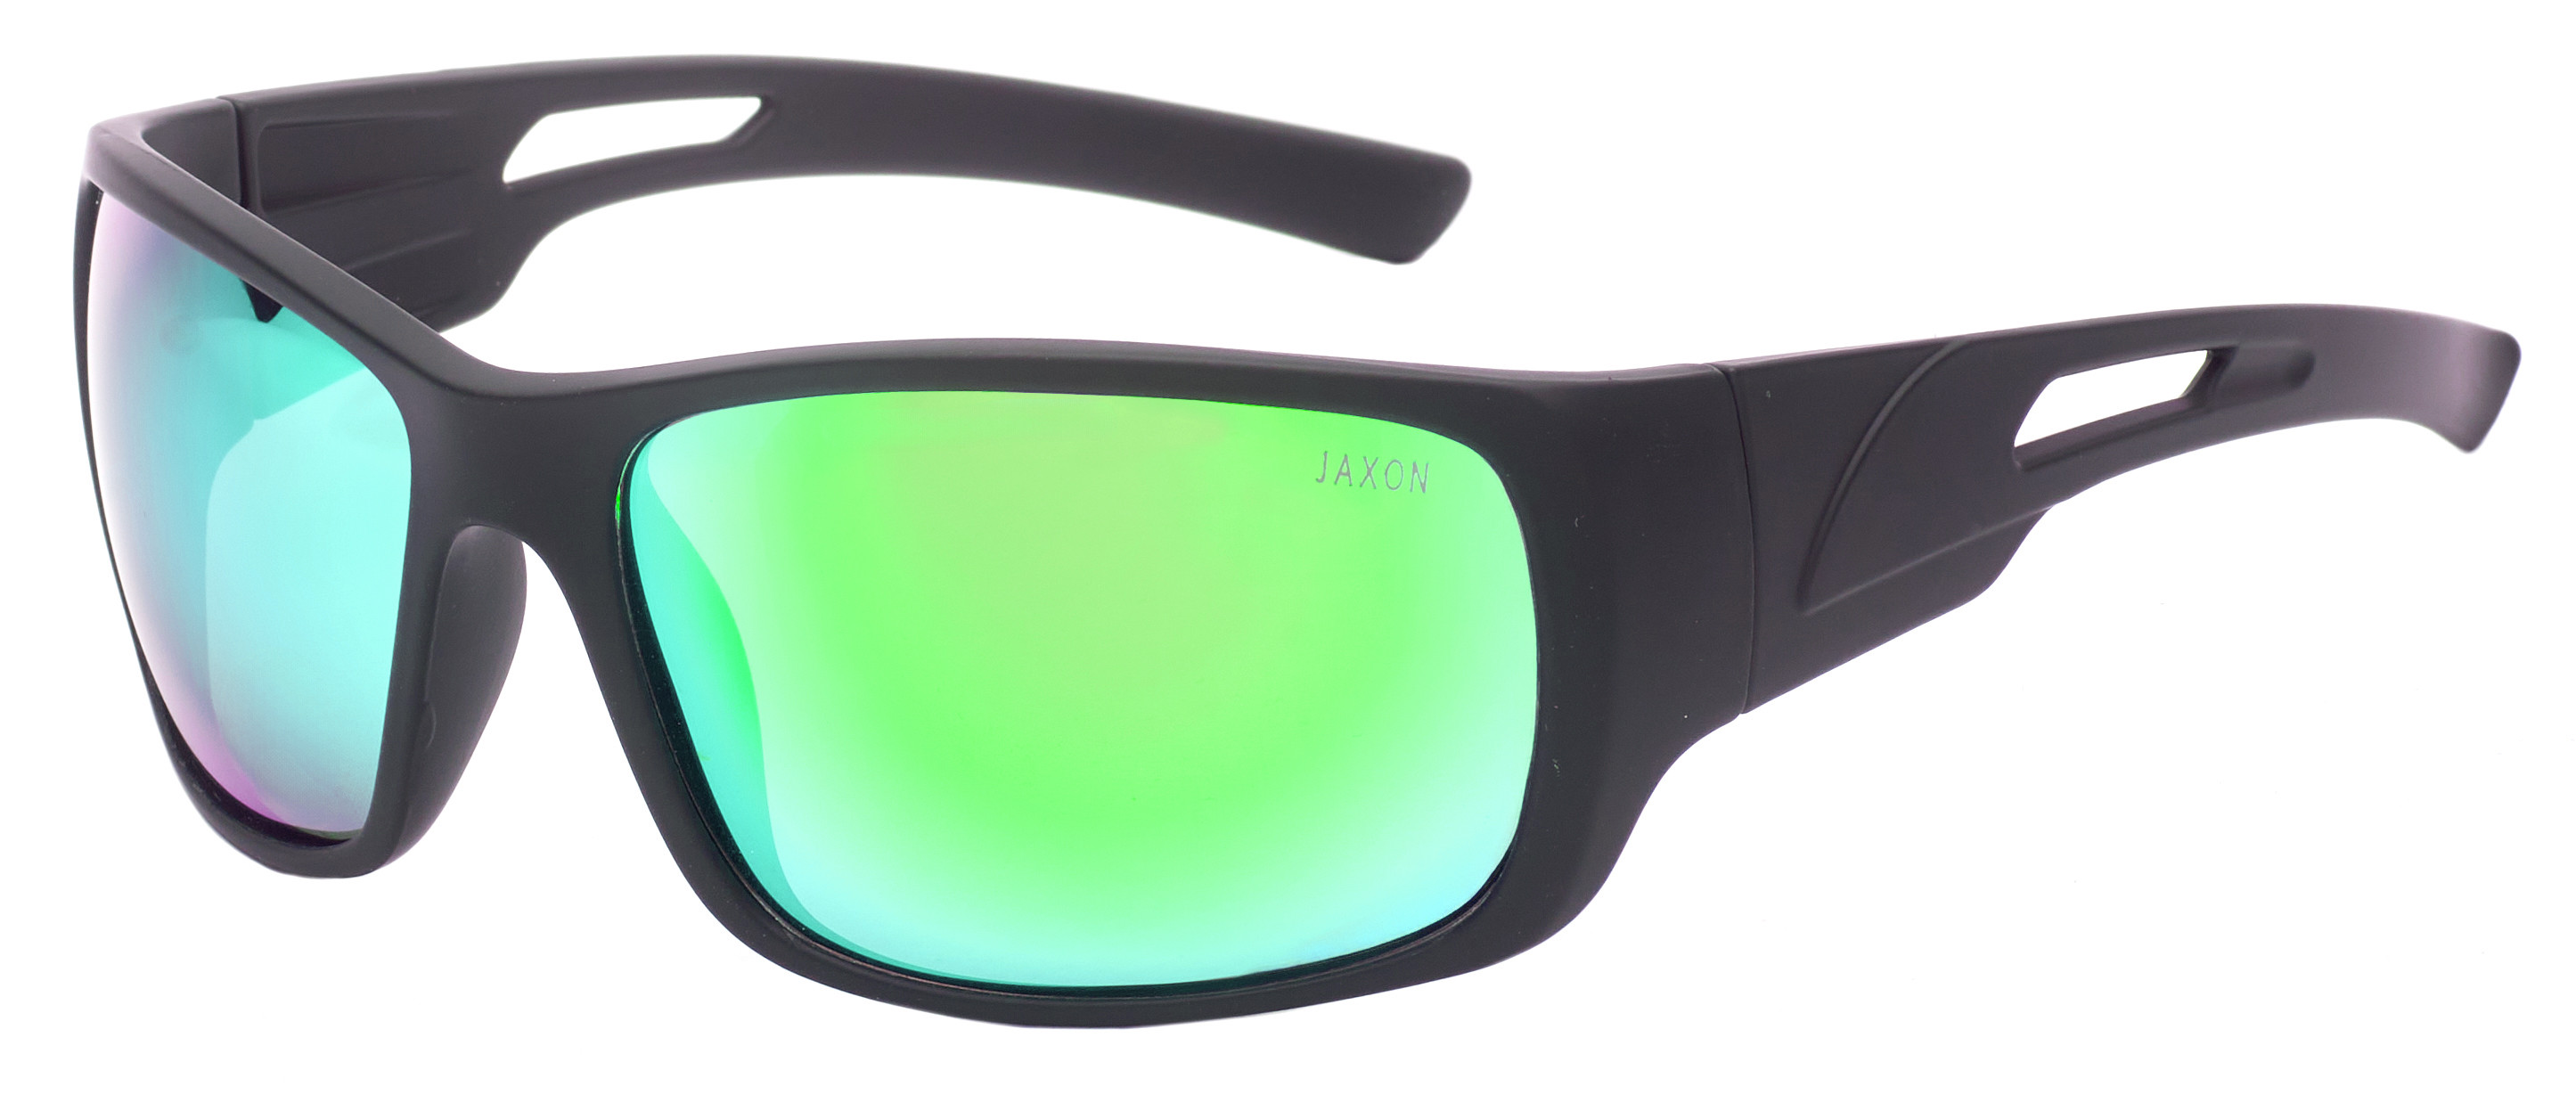 Очки поляризационные Jaxon X63SMZ зеркально зеленые